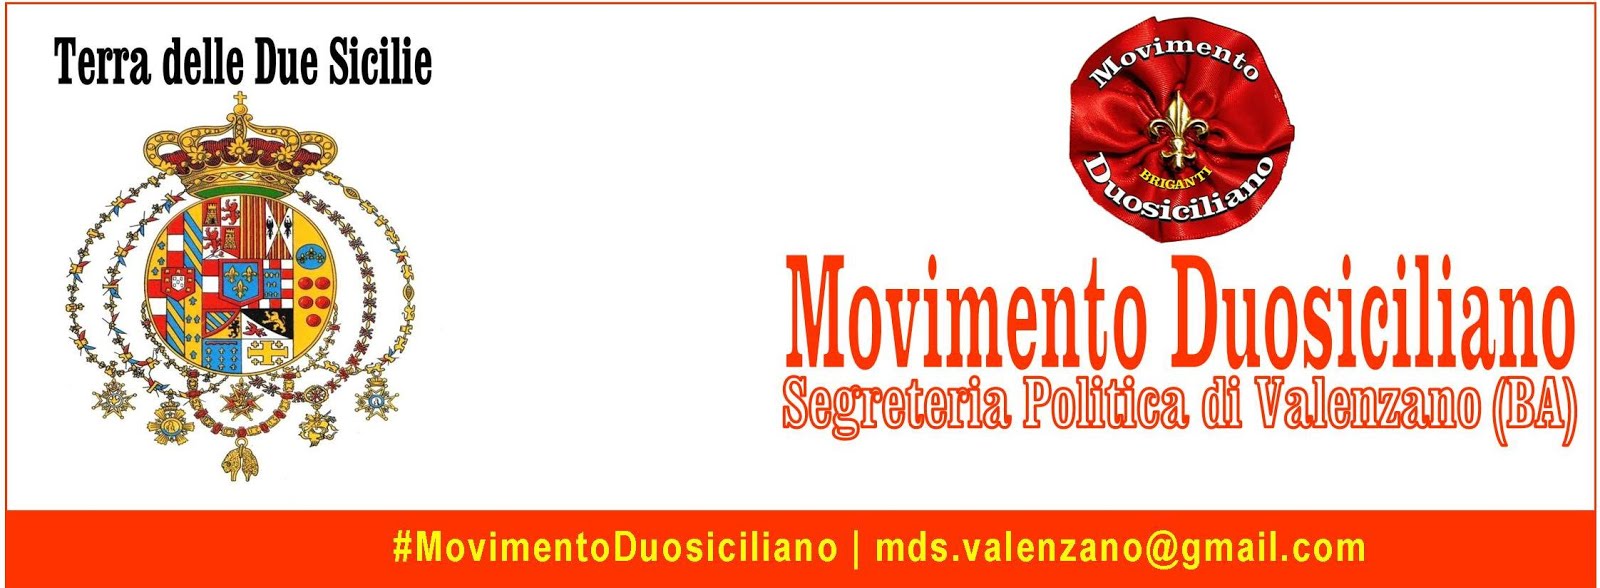 Movimento Duosiciliano - MDS